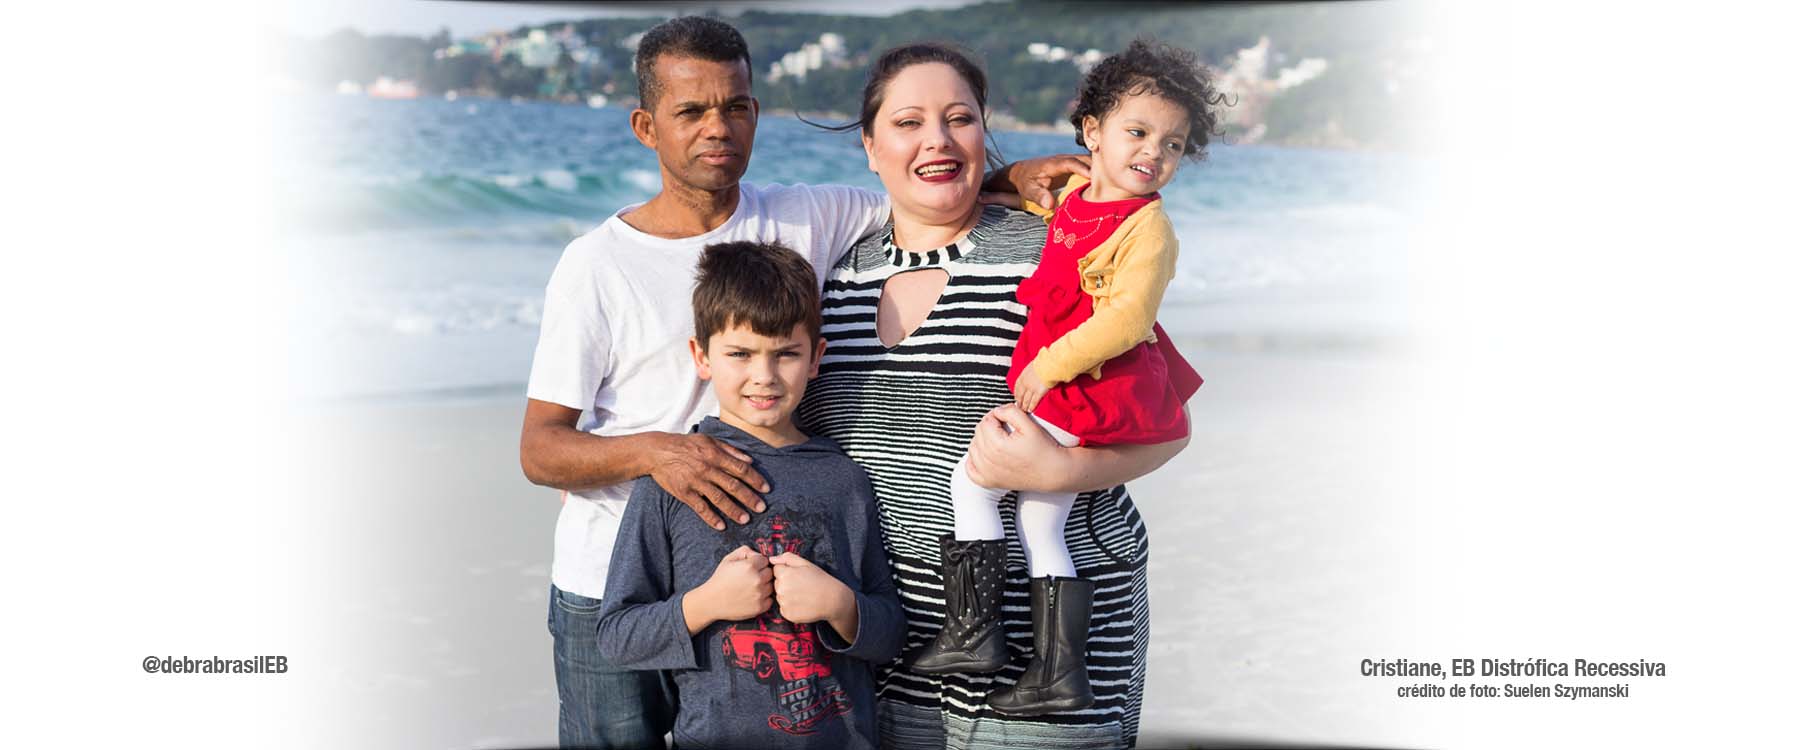 Cristiane, uma mulher com epidermólise bolhosa distrófica recessiva (EB), com o esposo, o filho pequeno e segurando a sua filha pequena no colo